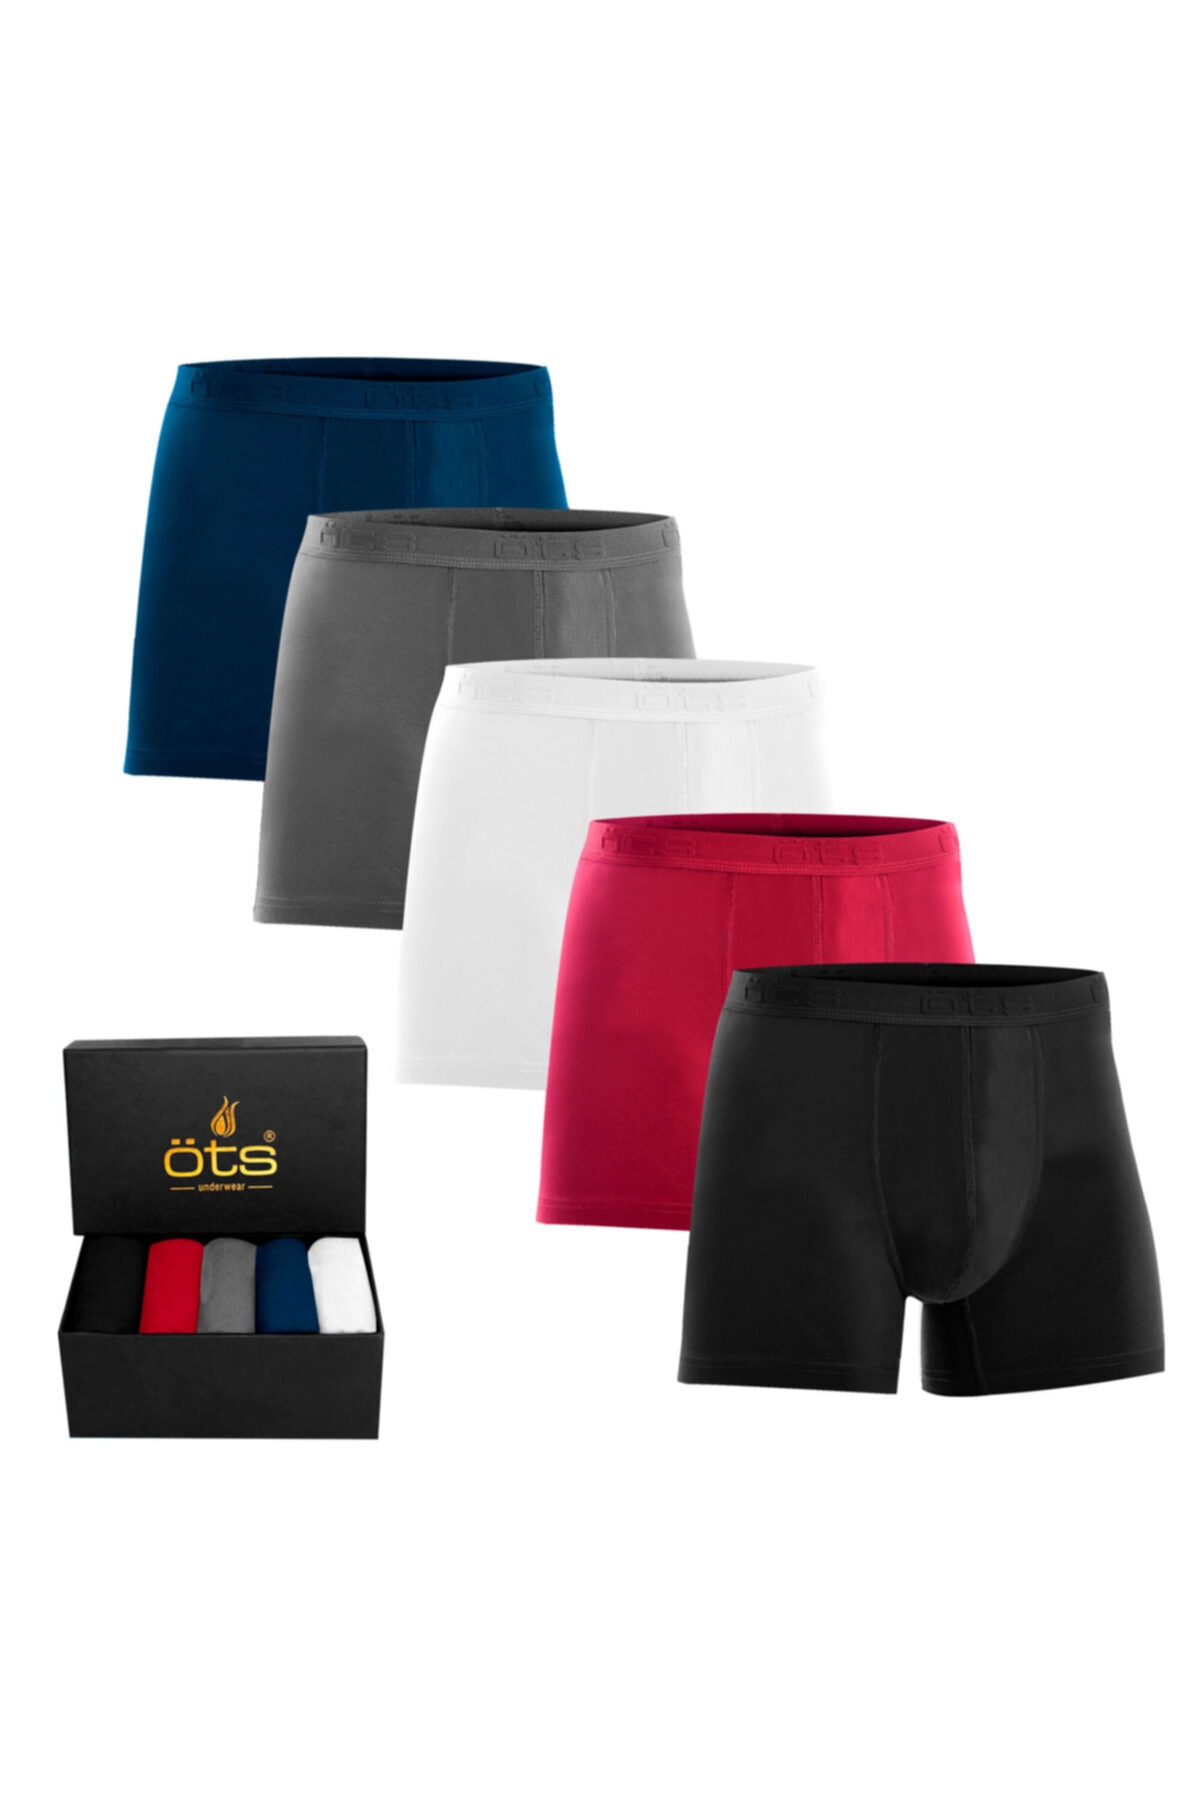 Öts Erkek Modal Boxer 5'li Paket Pamuklu Esnek Kumaş Premium Özel Hediye Kutusunda